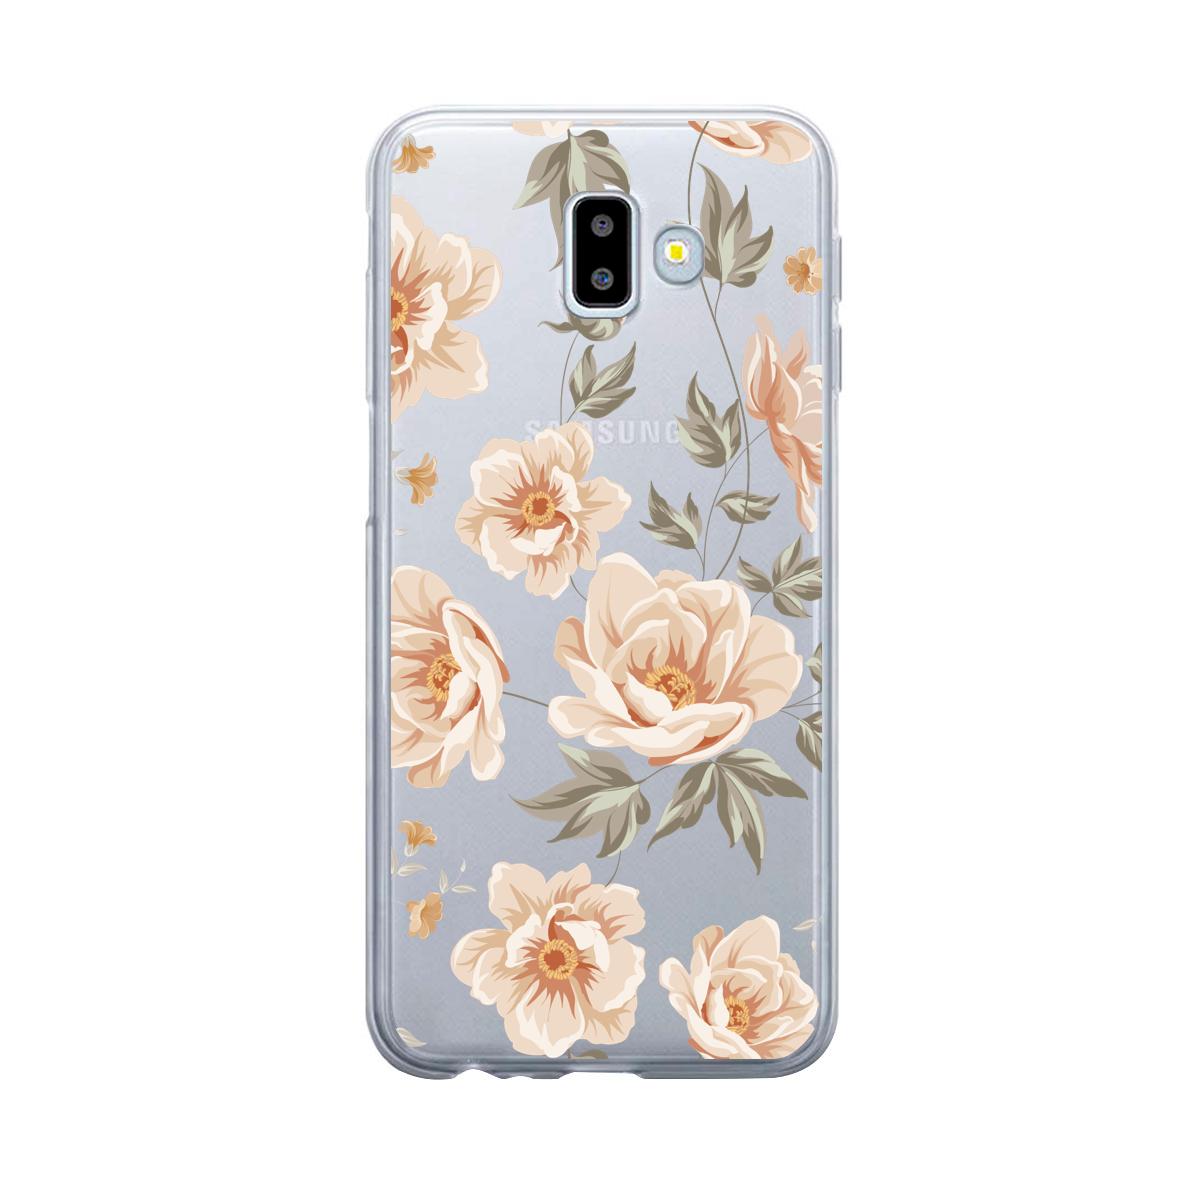 Case para Samsung J6 Plus de Flores Beige - Mandala Cases